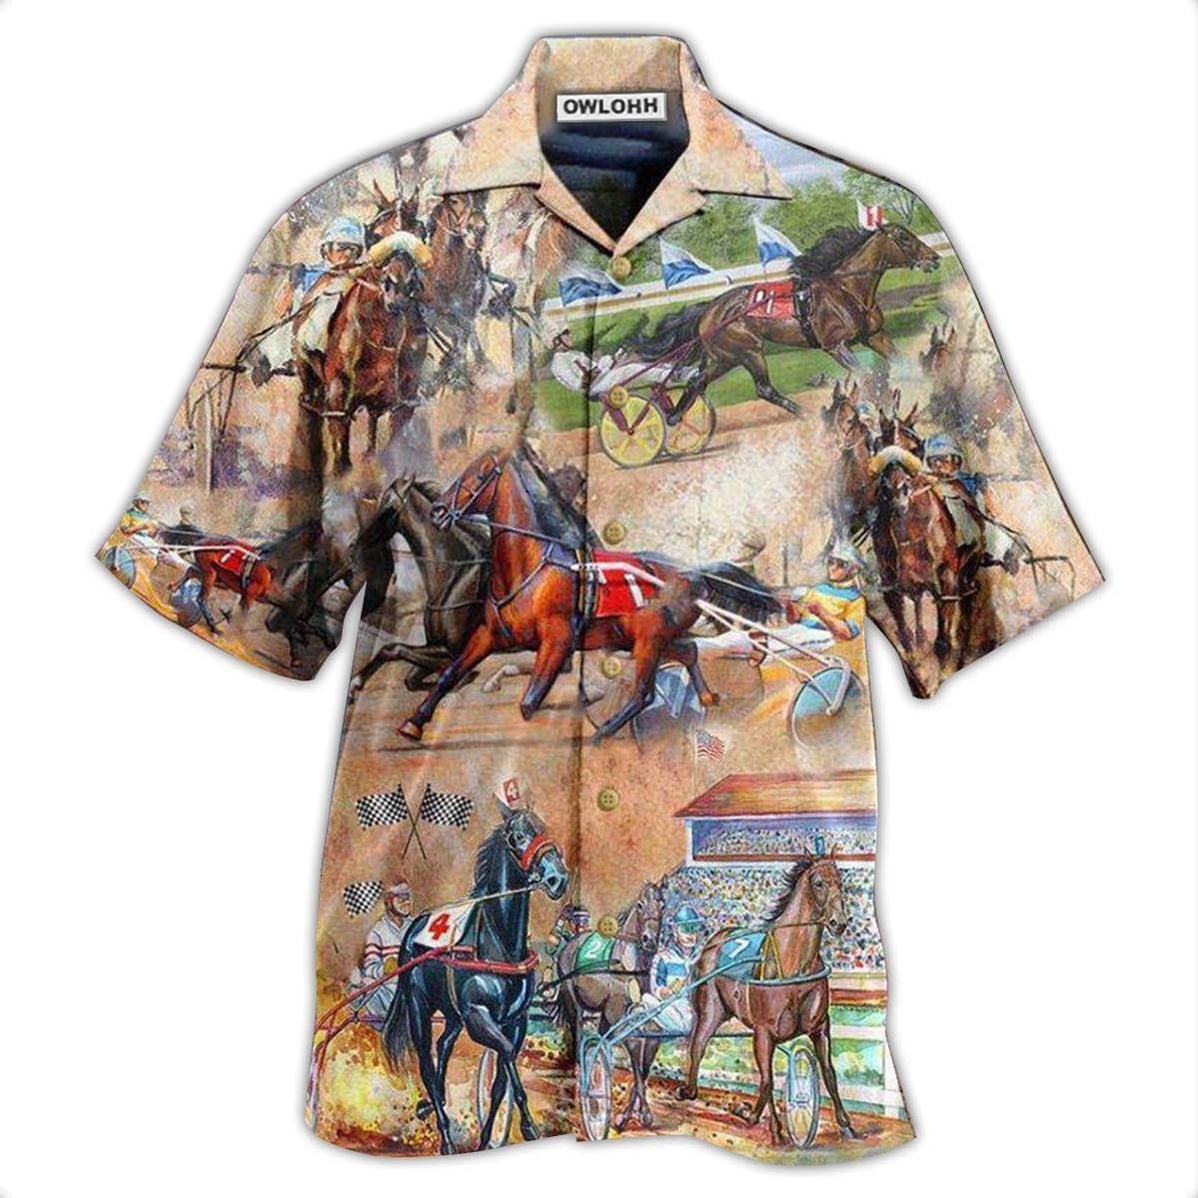 Hawaiian Shirt / Adults / S Horse Harness Racing On With Passion - Hawaiian Shirt - Owls Matrix LTD